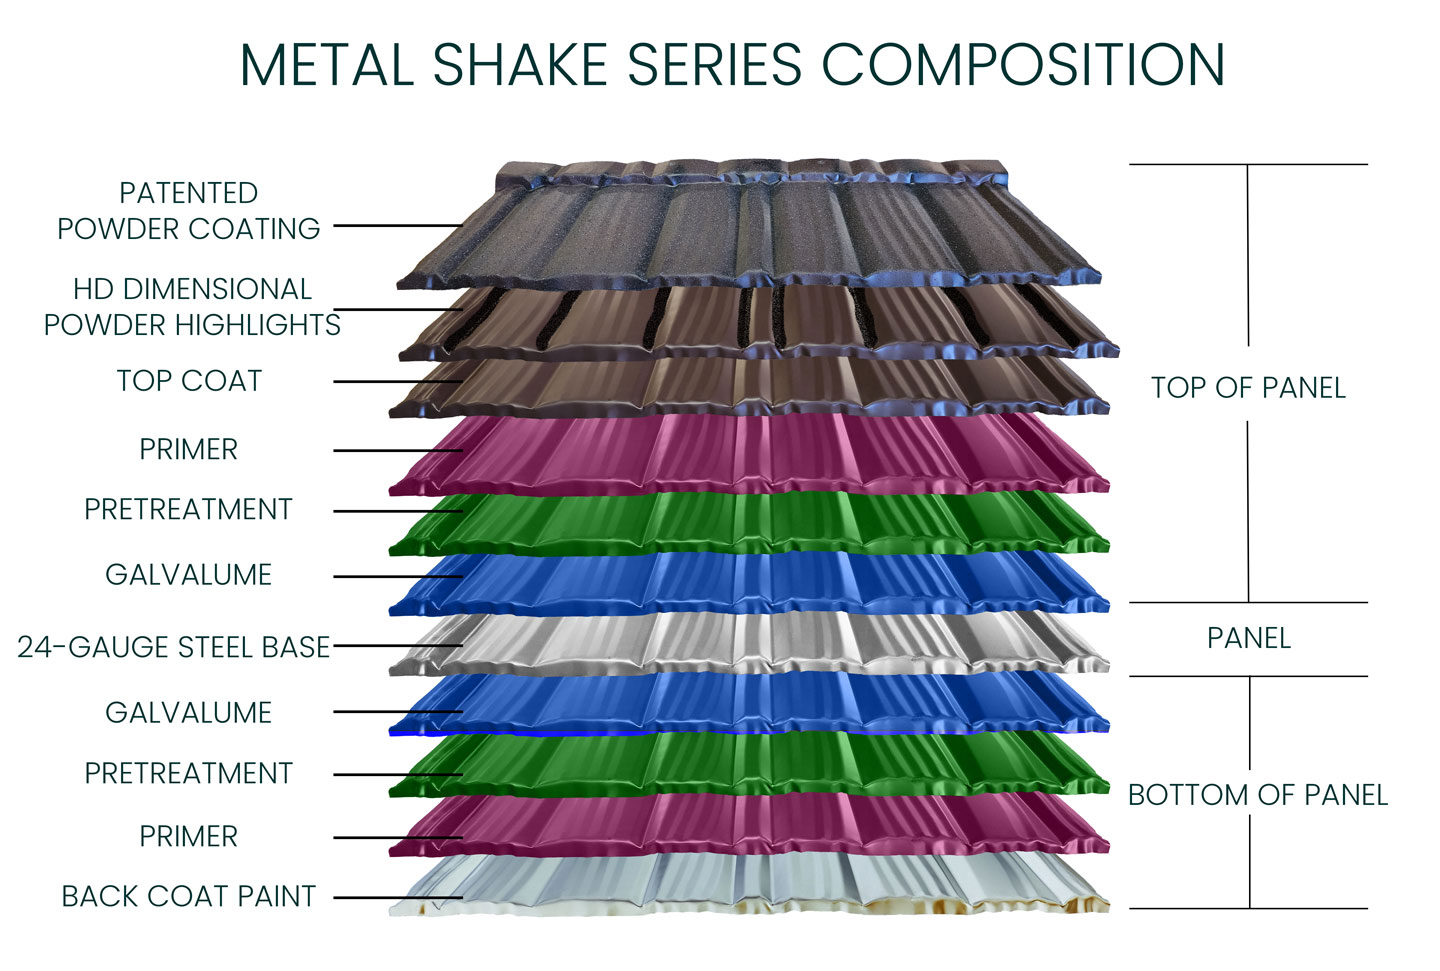 Metal Shake Panel Composition